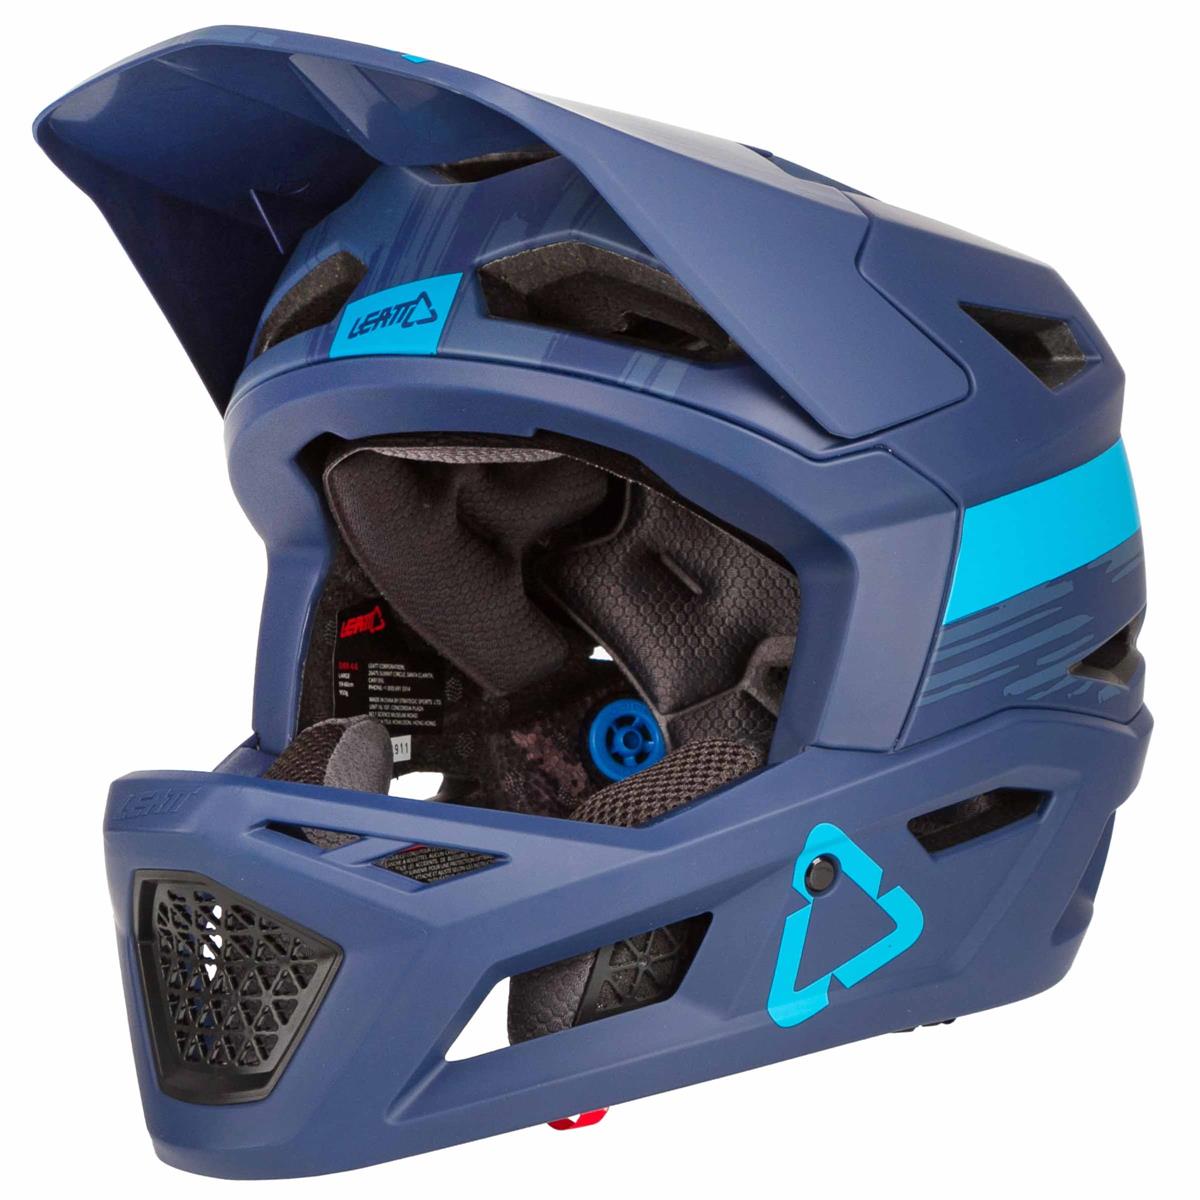 Leatt Downhill MTB Helmet DBX 4.0 Blue Ink